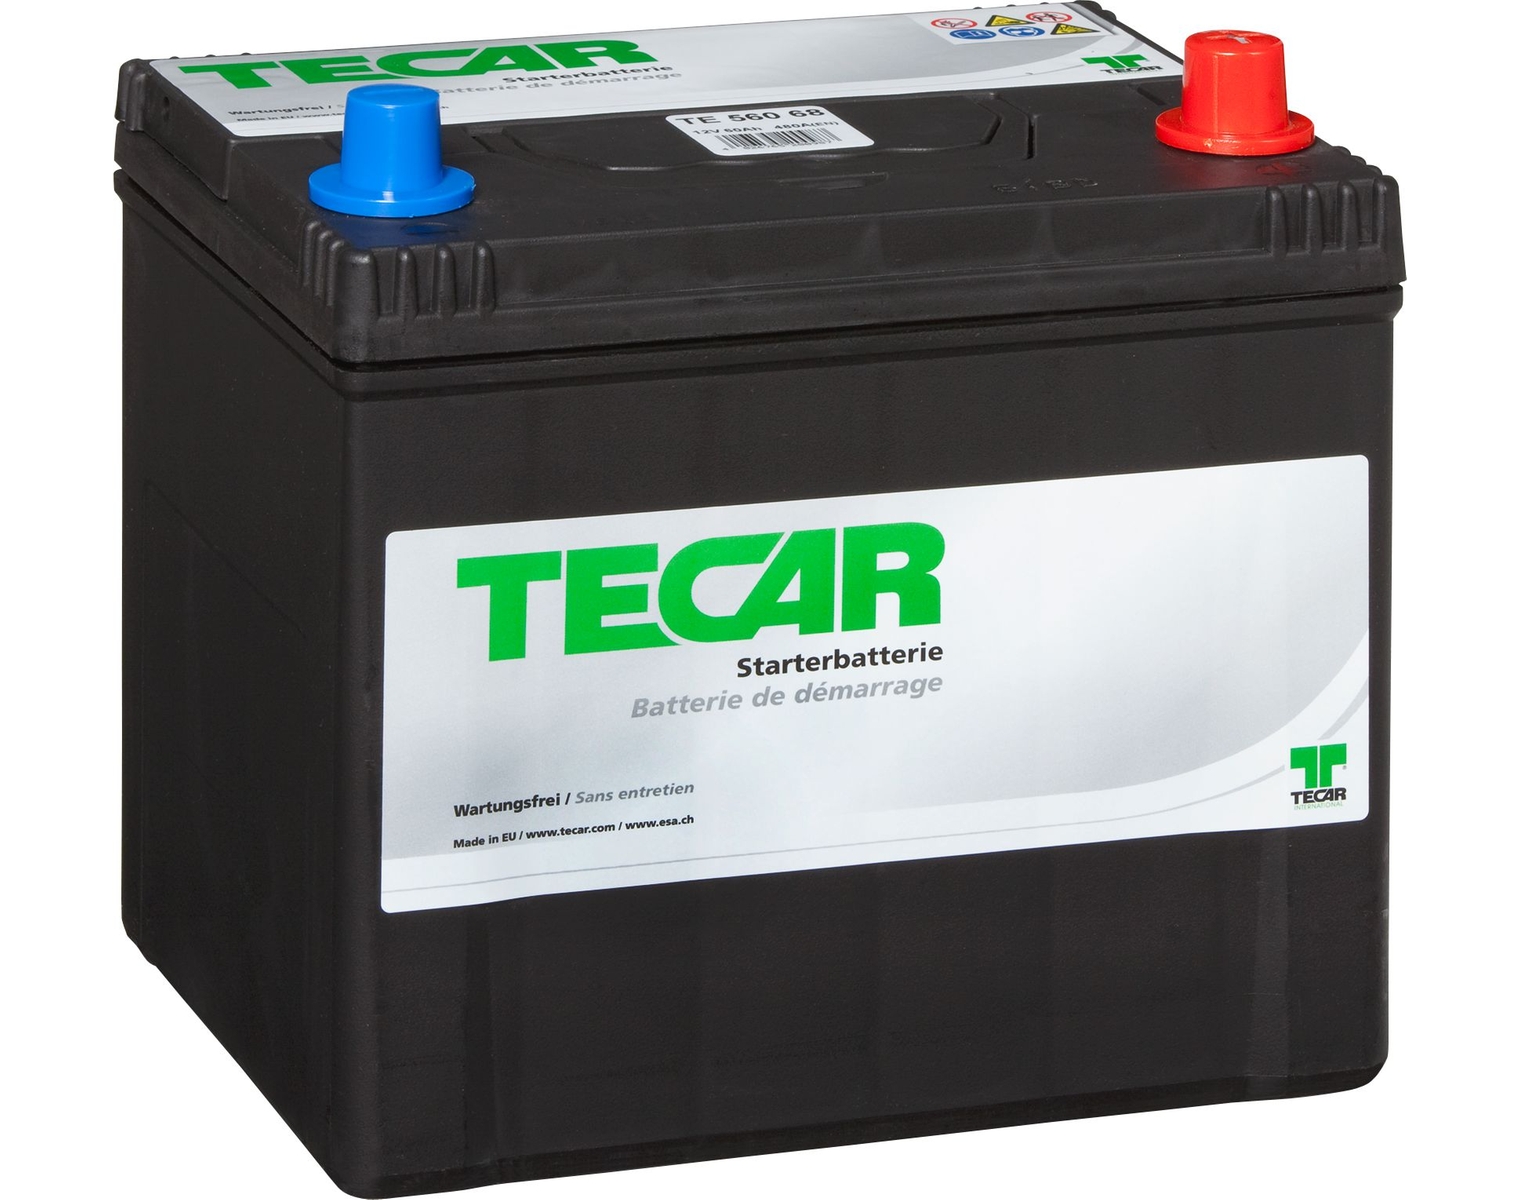 TECAR Starterbatterie 12V 56068